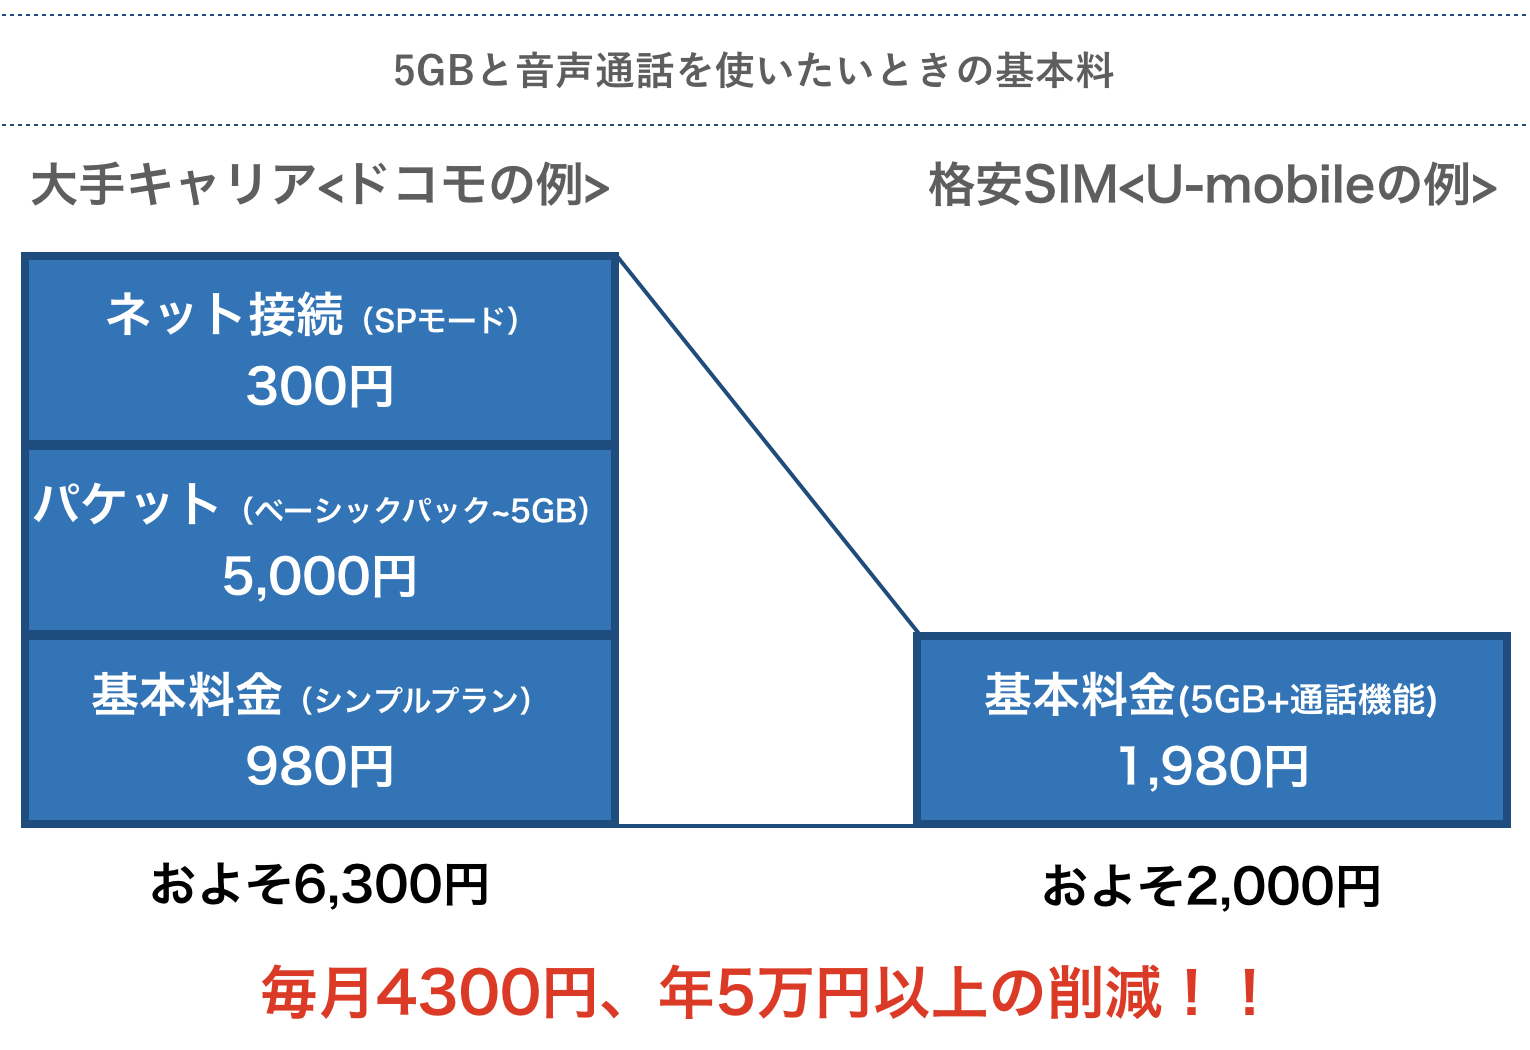 ドコモ系格安sim15社の速度を測って徹底比較 おすすめ4社を厳選